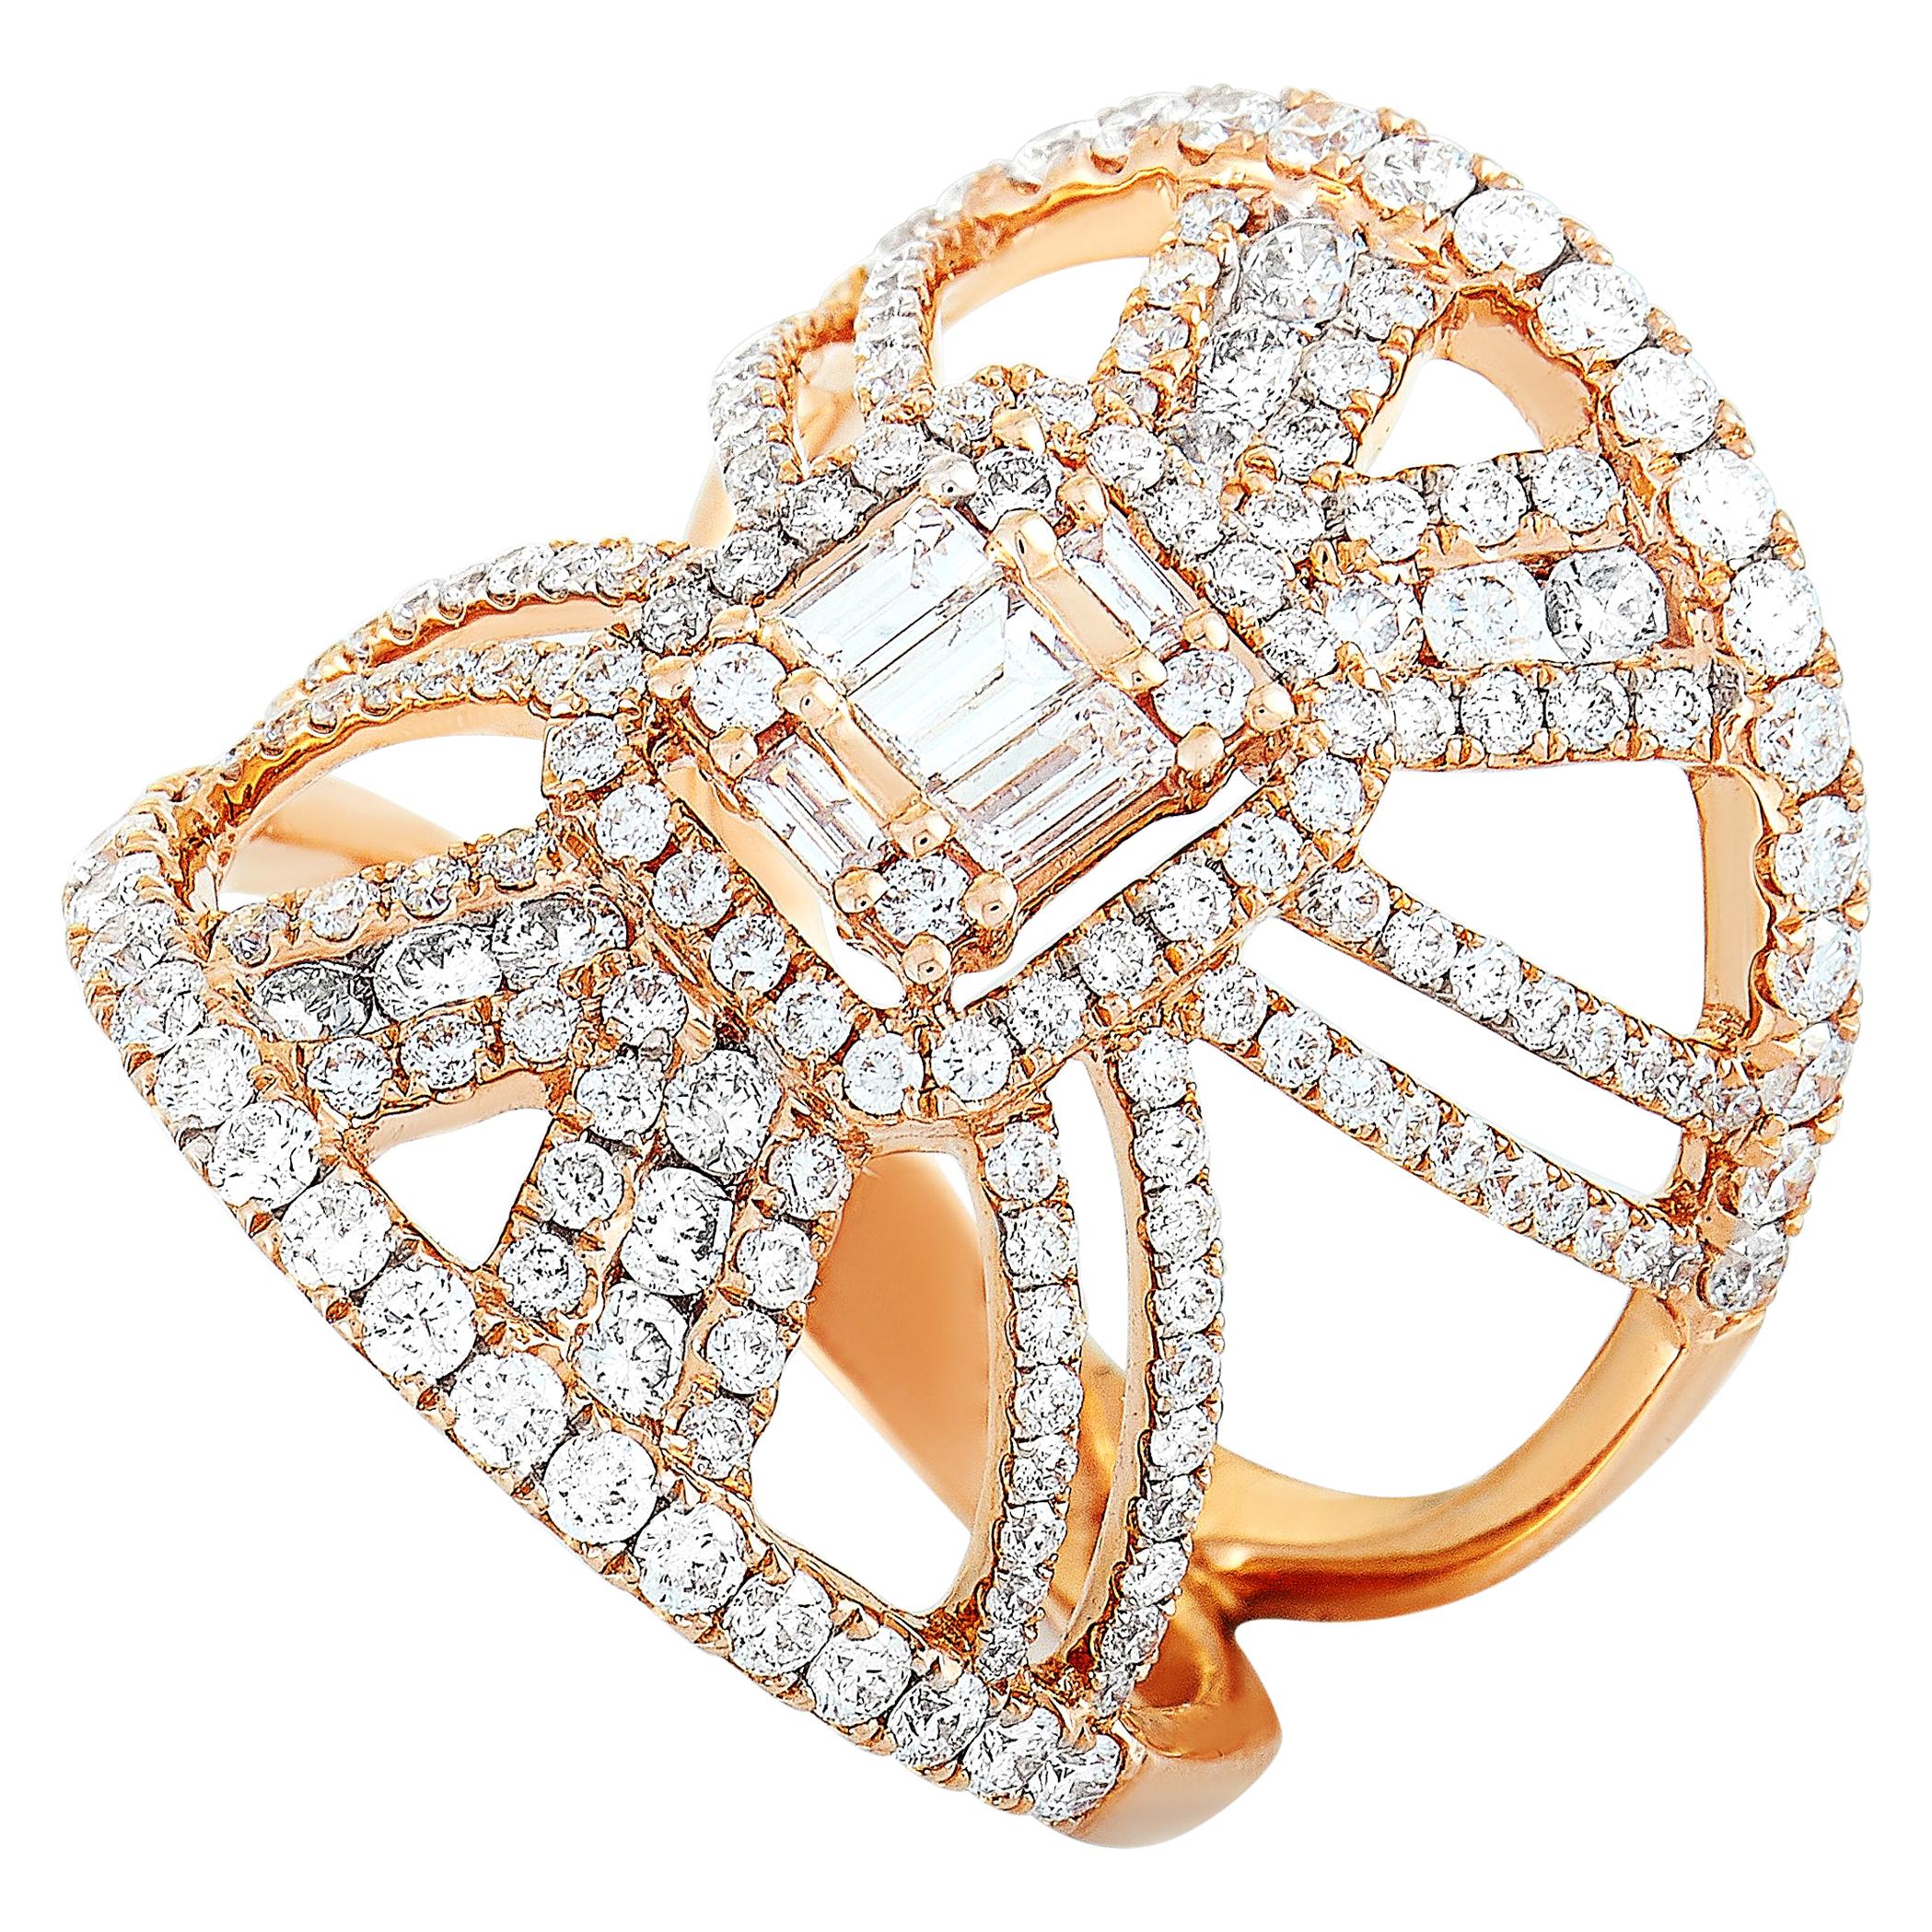 LB Exclusive 18 Karat Rose Gold Diamond Cocktail Ring